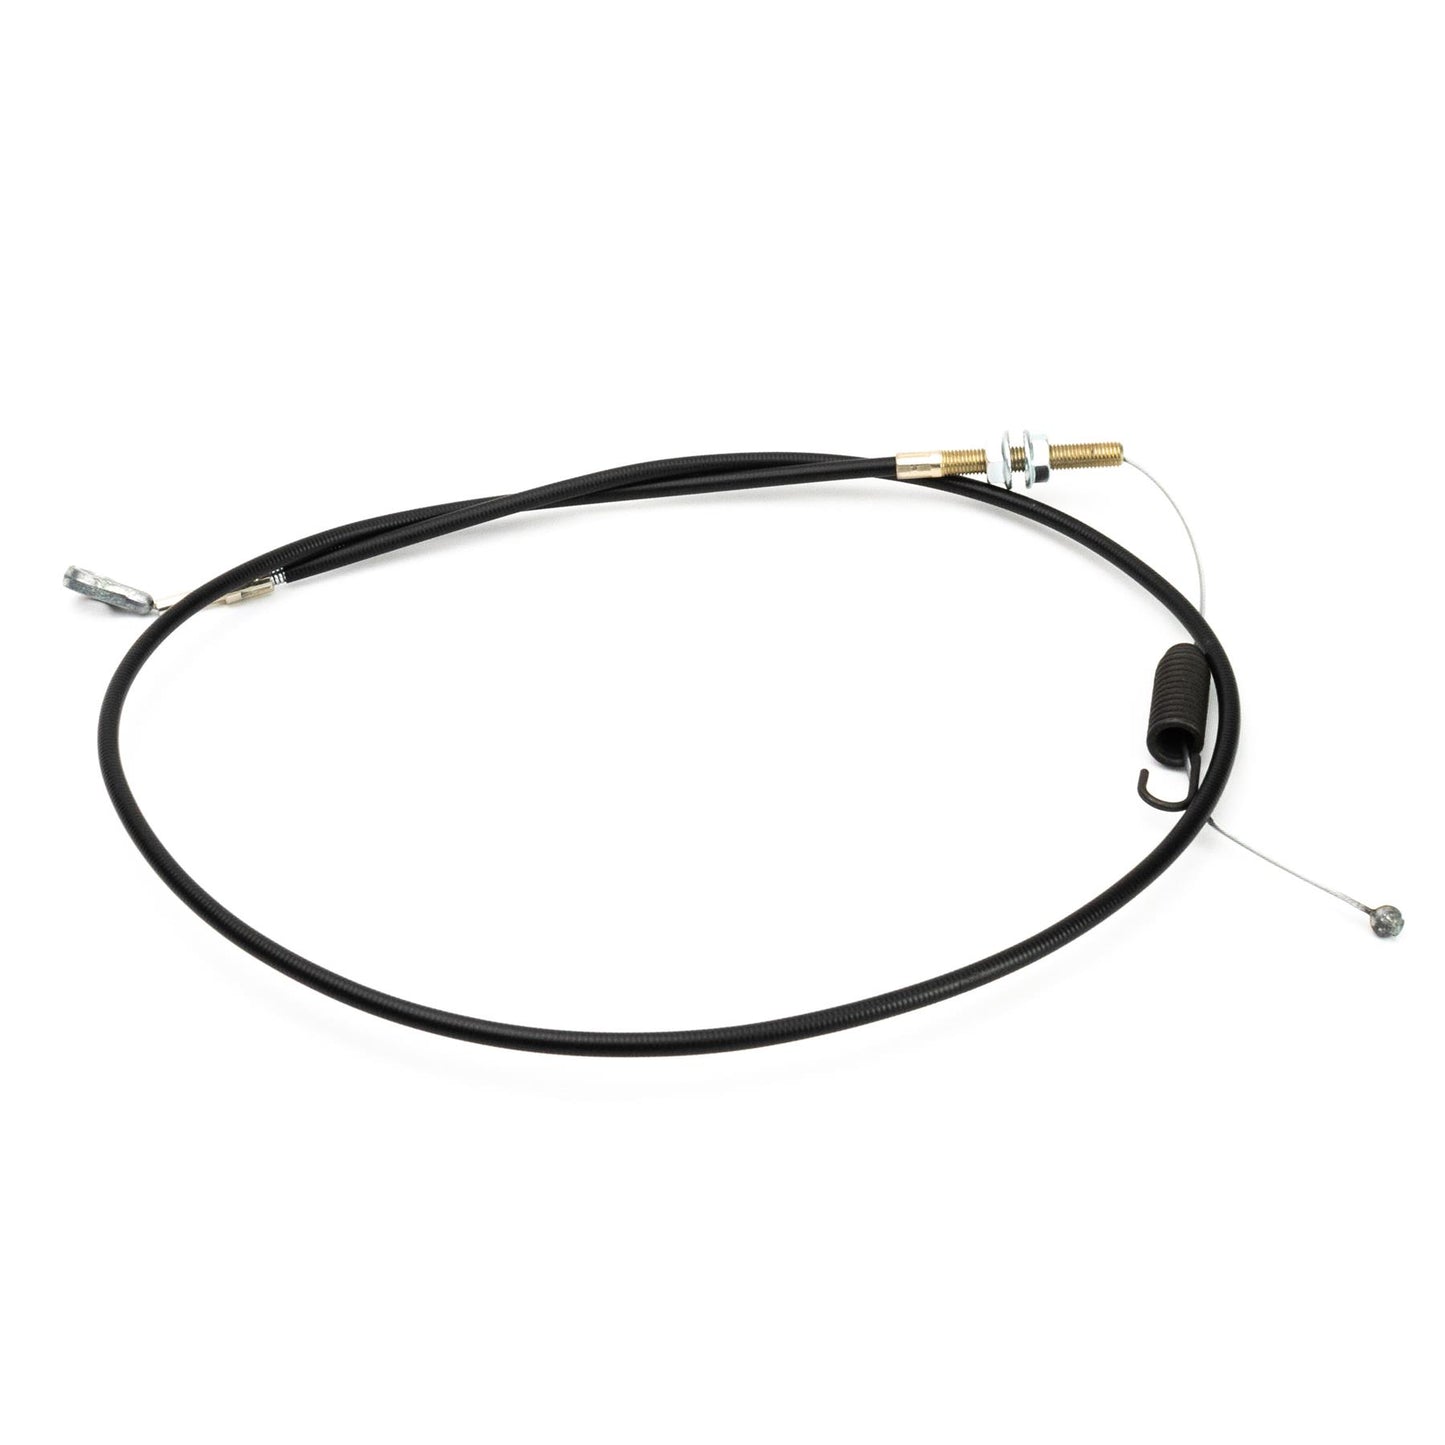 John Deere Cable - GX21634